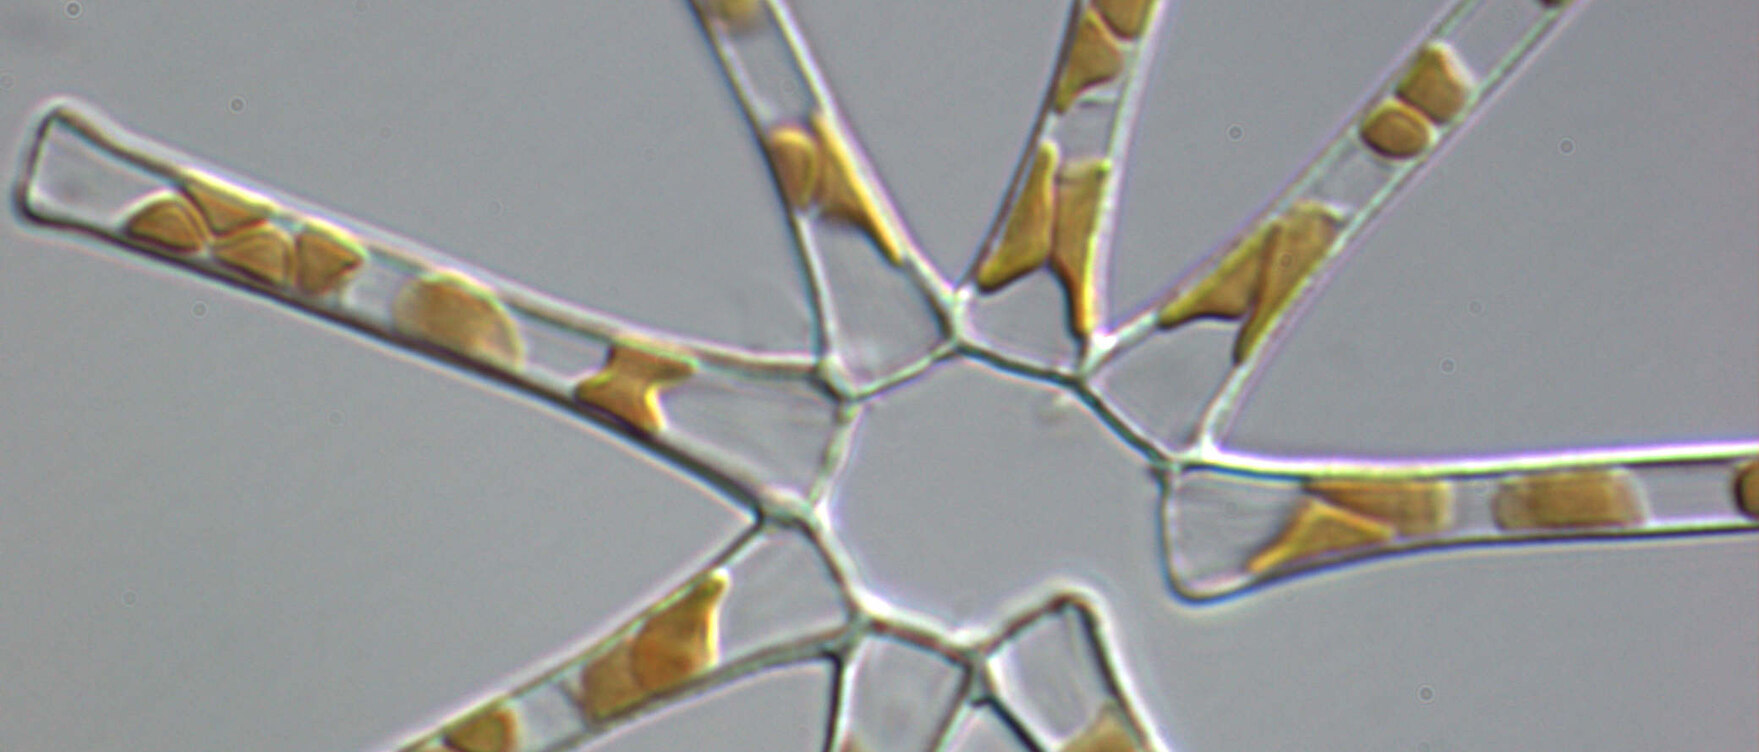 Asterionella Formosa (47 x 5,1 Mikrometer)